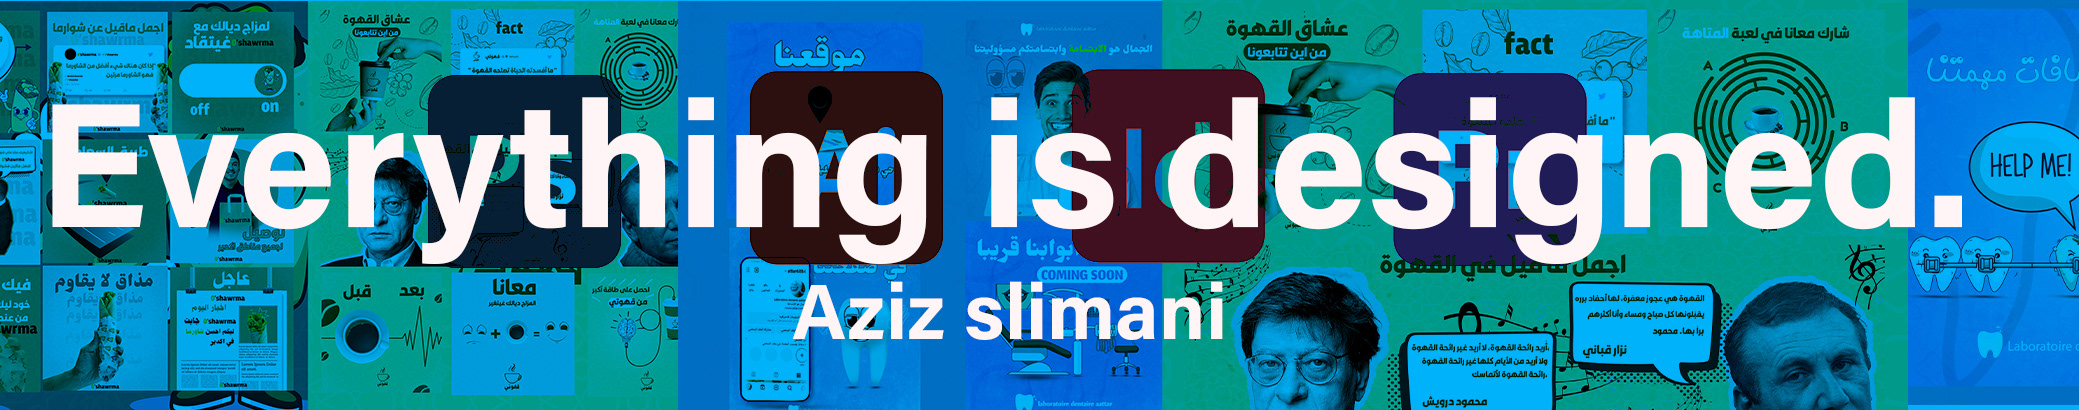 Bannière de profil de Aziz slimani